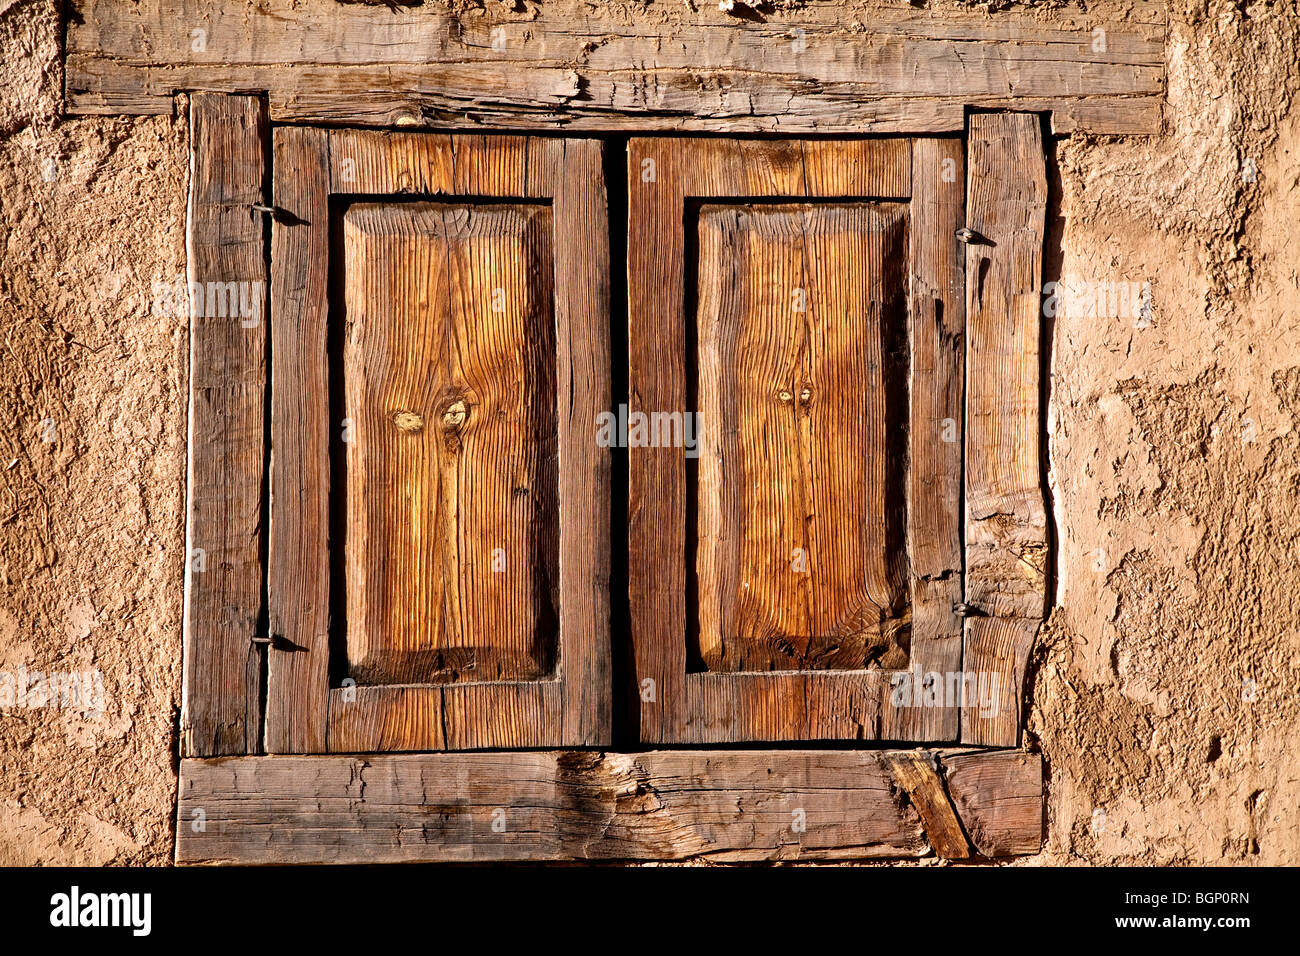 Ancien bâtiment de construction adobe avec fenêtre en bois à volets, Taos, Nouveau Mexique USA Banque D'Images